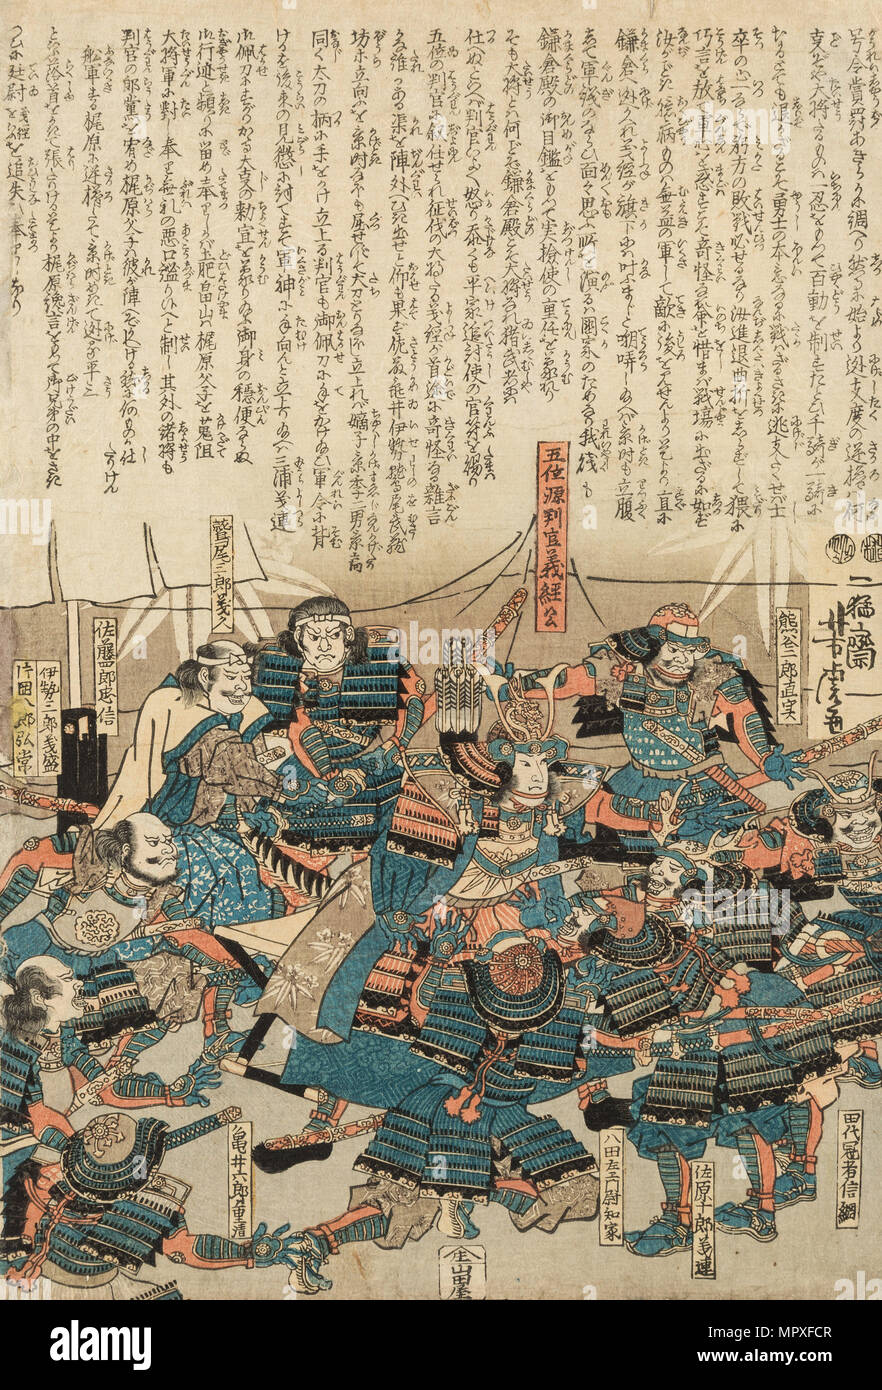 Shogun Minamoto No Yoshitsune And His Samurai C 1840 Stock Photo Alamy